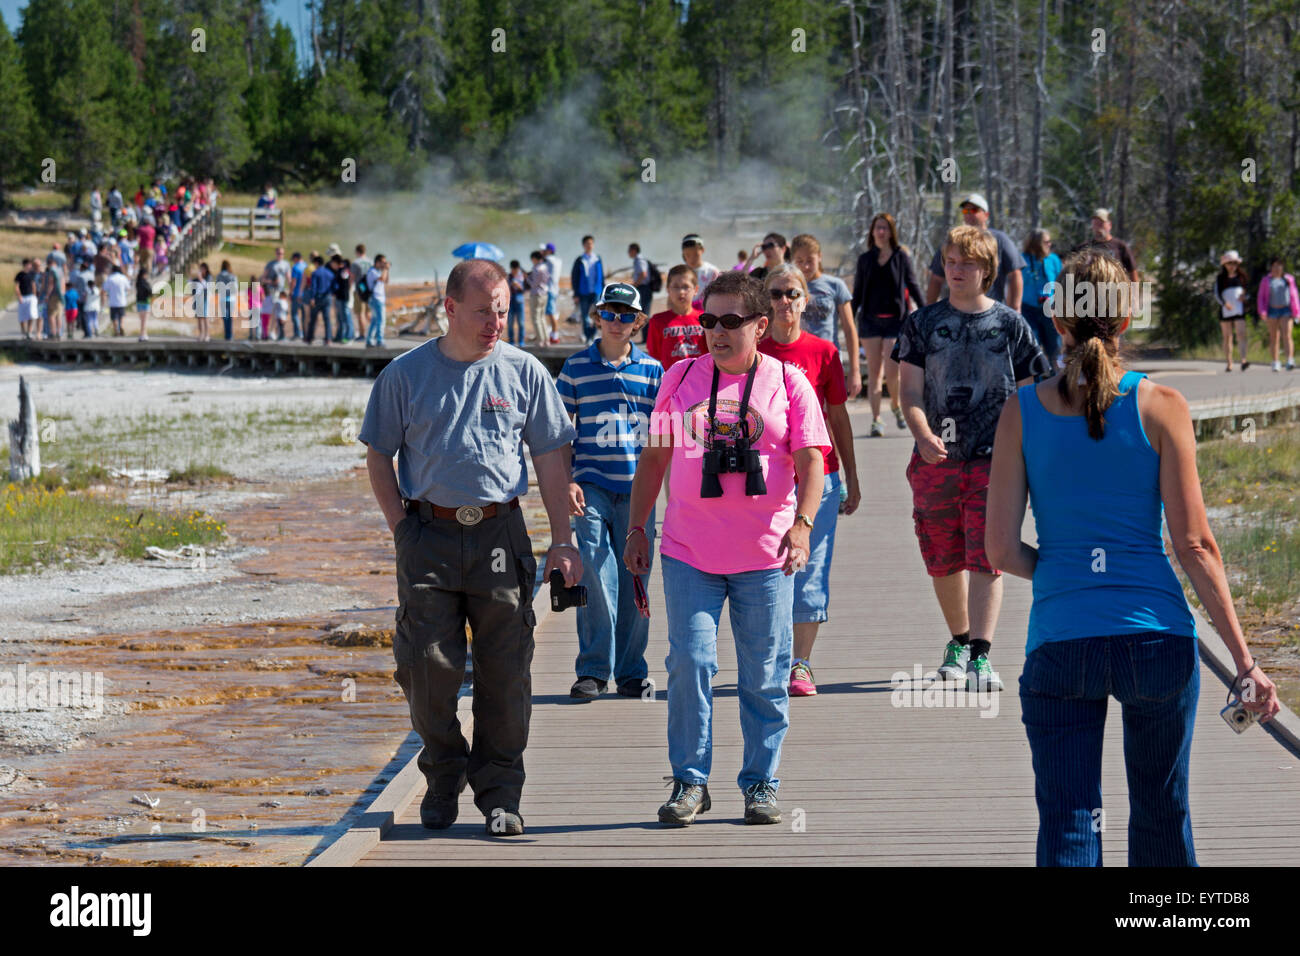 Yellowstone-Nationalpark, Wyoming - Touristen drängen sich die Promenaden in Yellowstone Lower Geyser Basin. Stockfoto